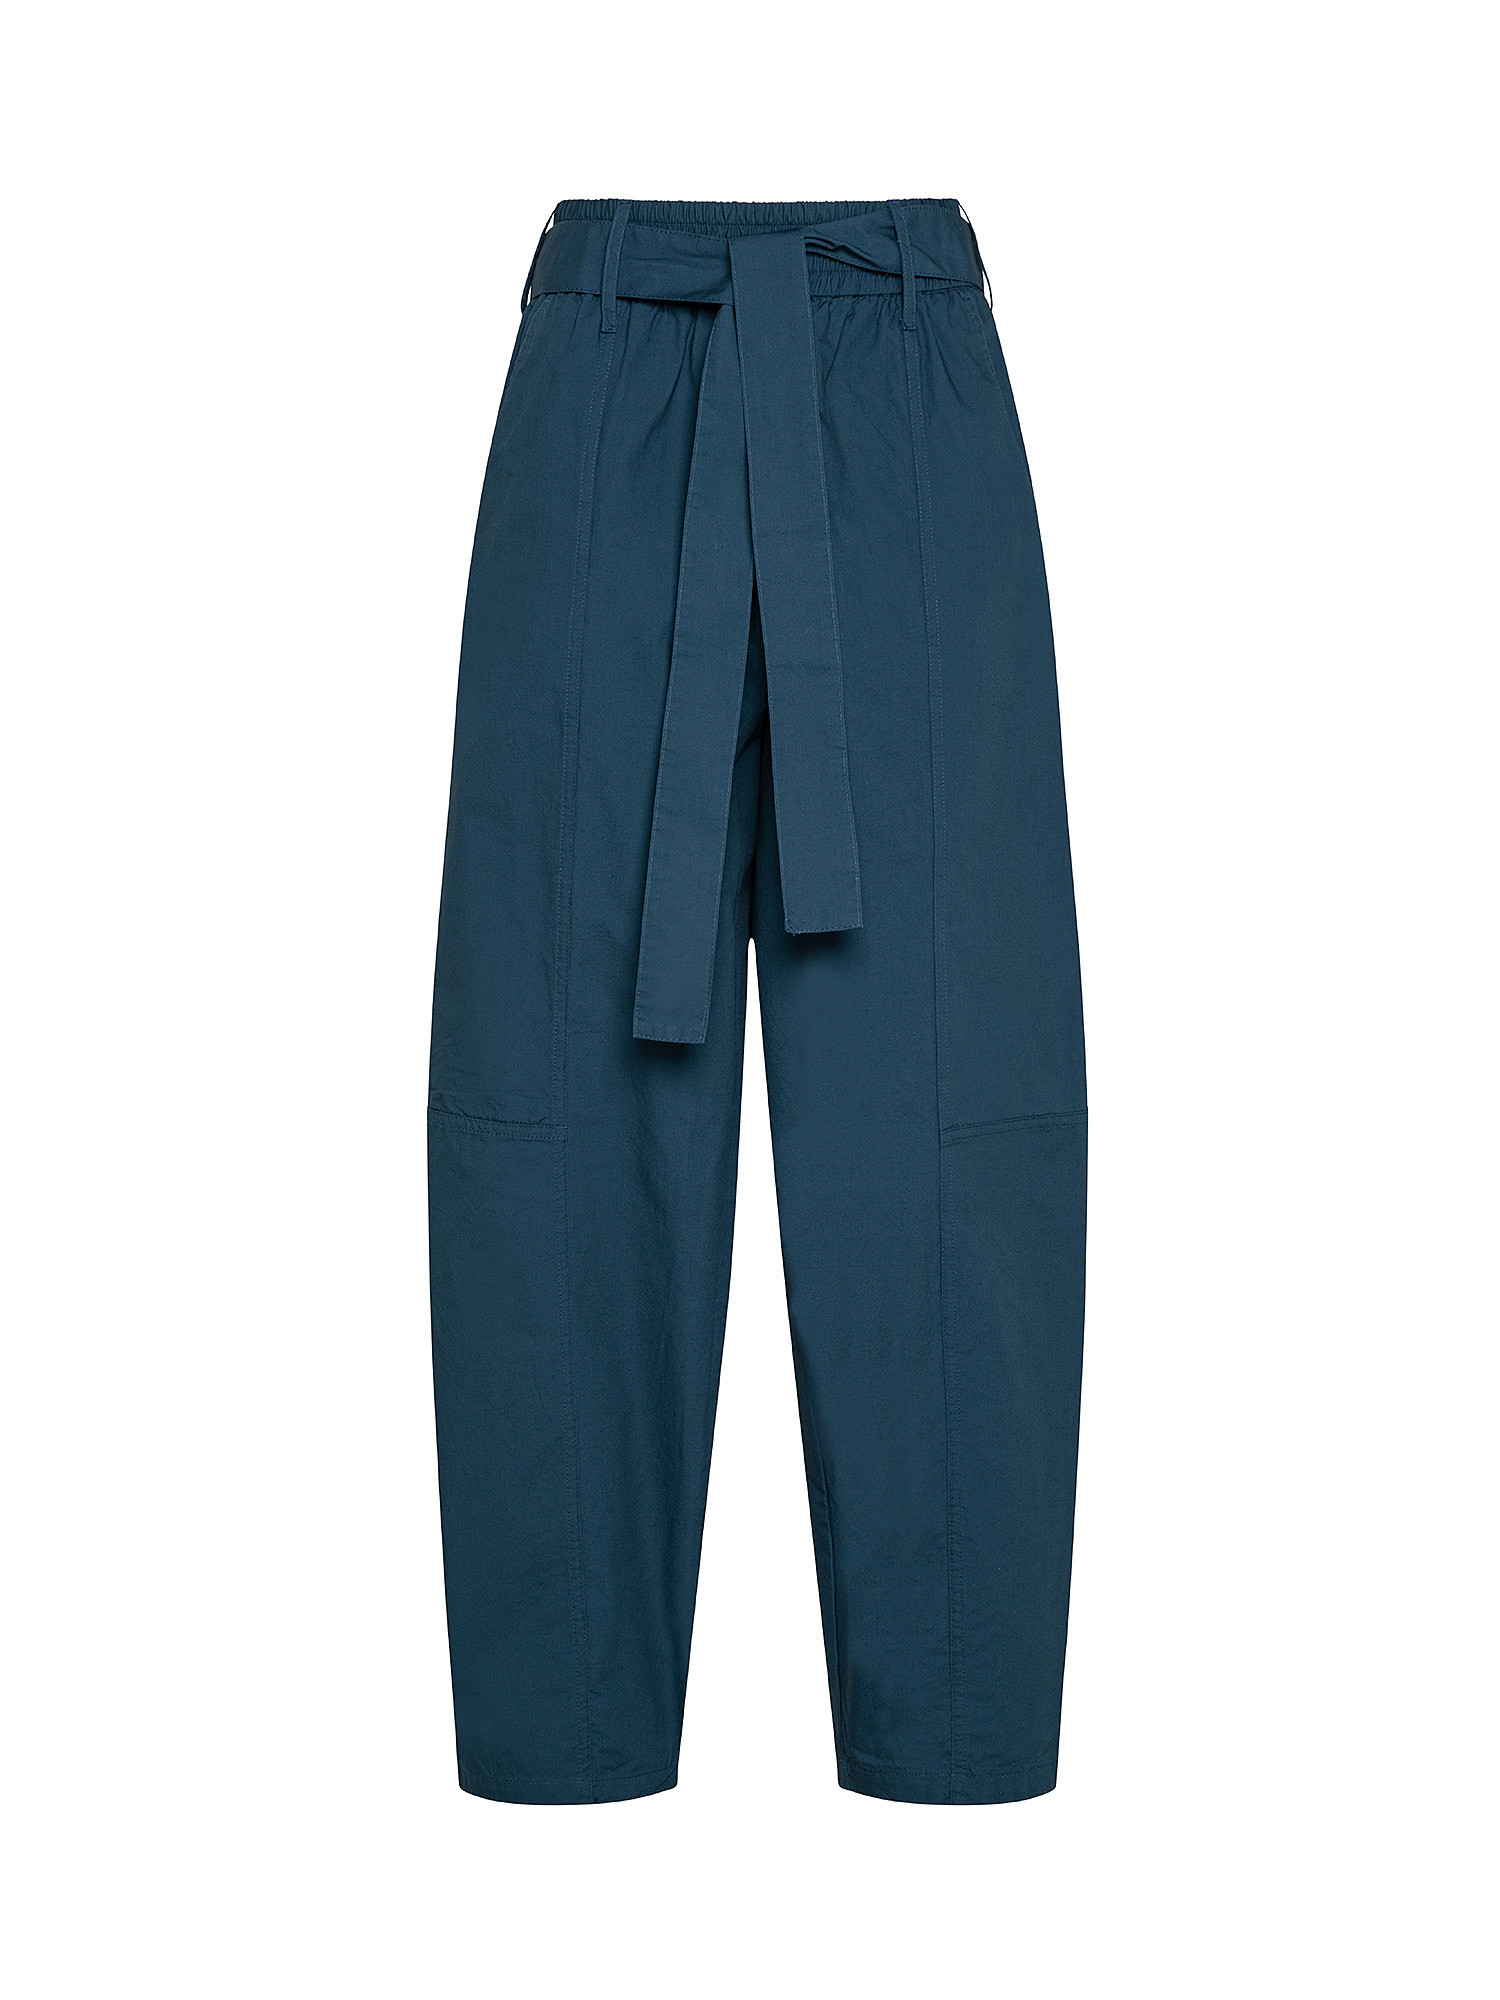 Pantalone, Blu, large image number 0